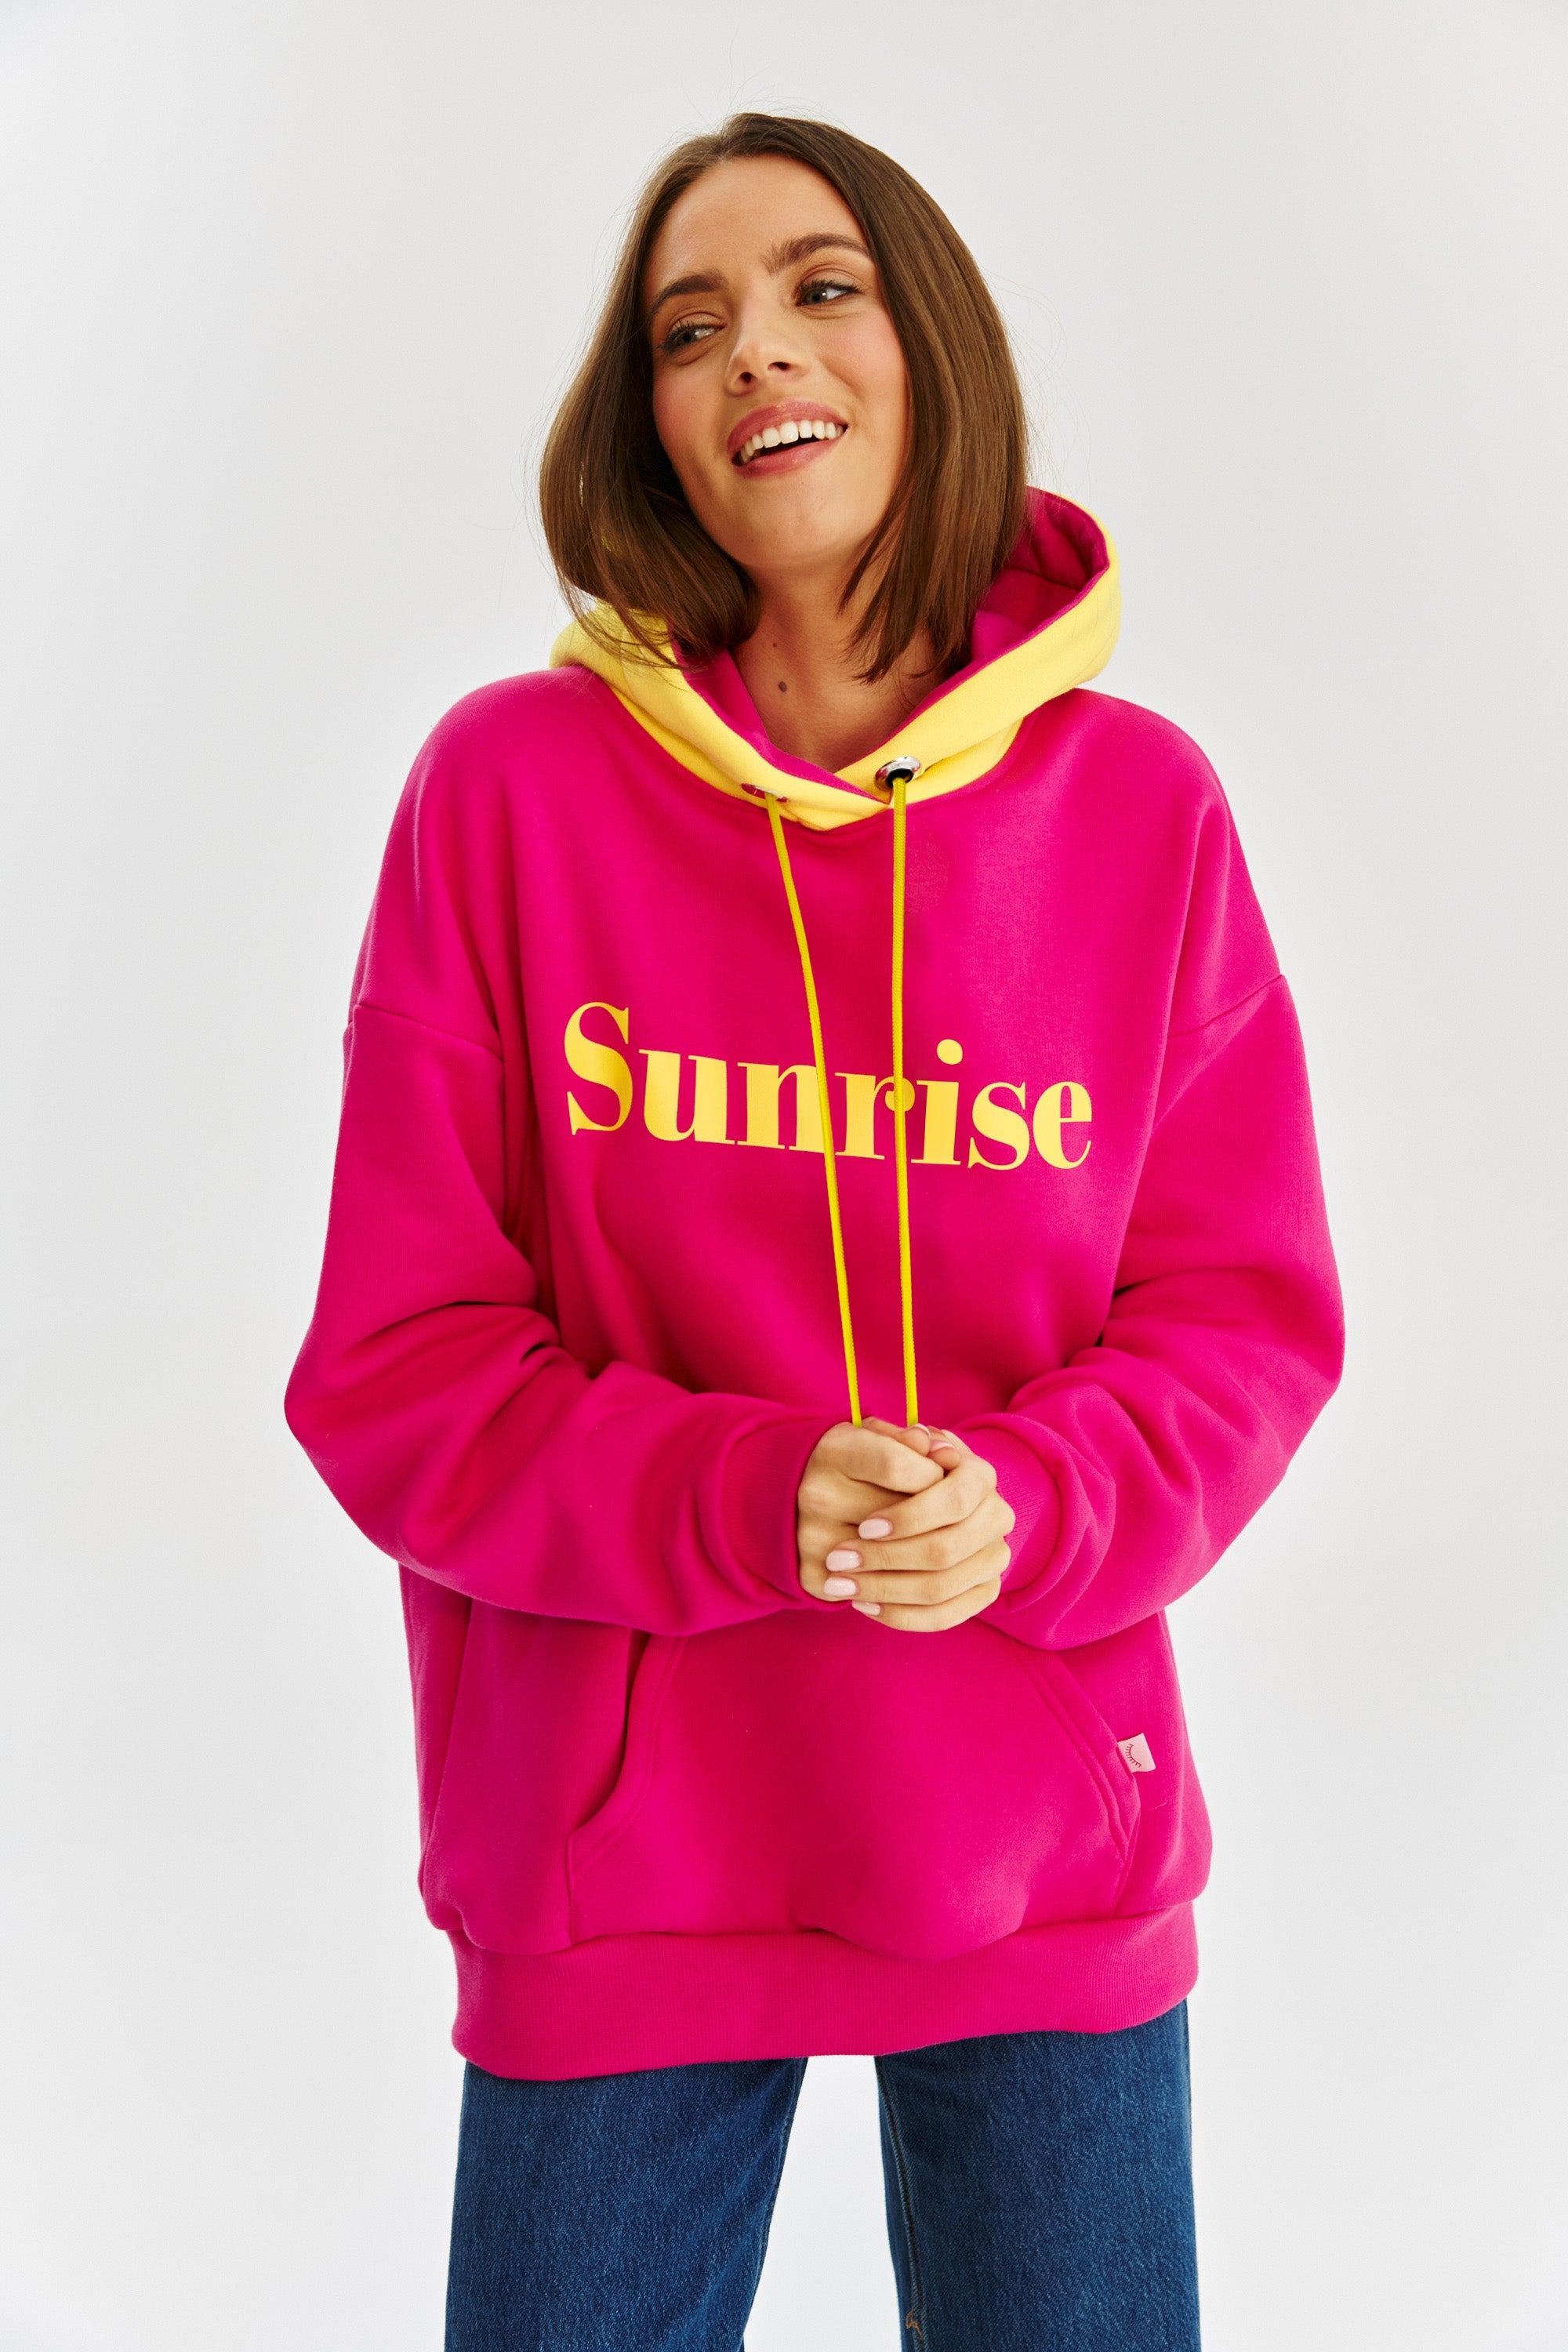 Sunrise Sunset hoodie